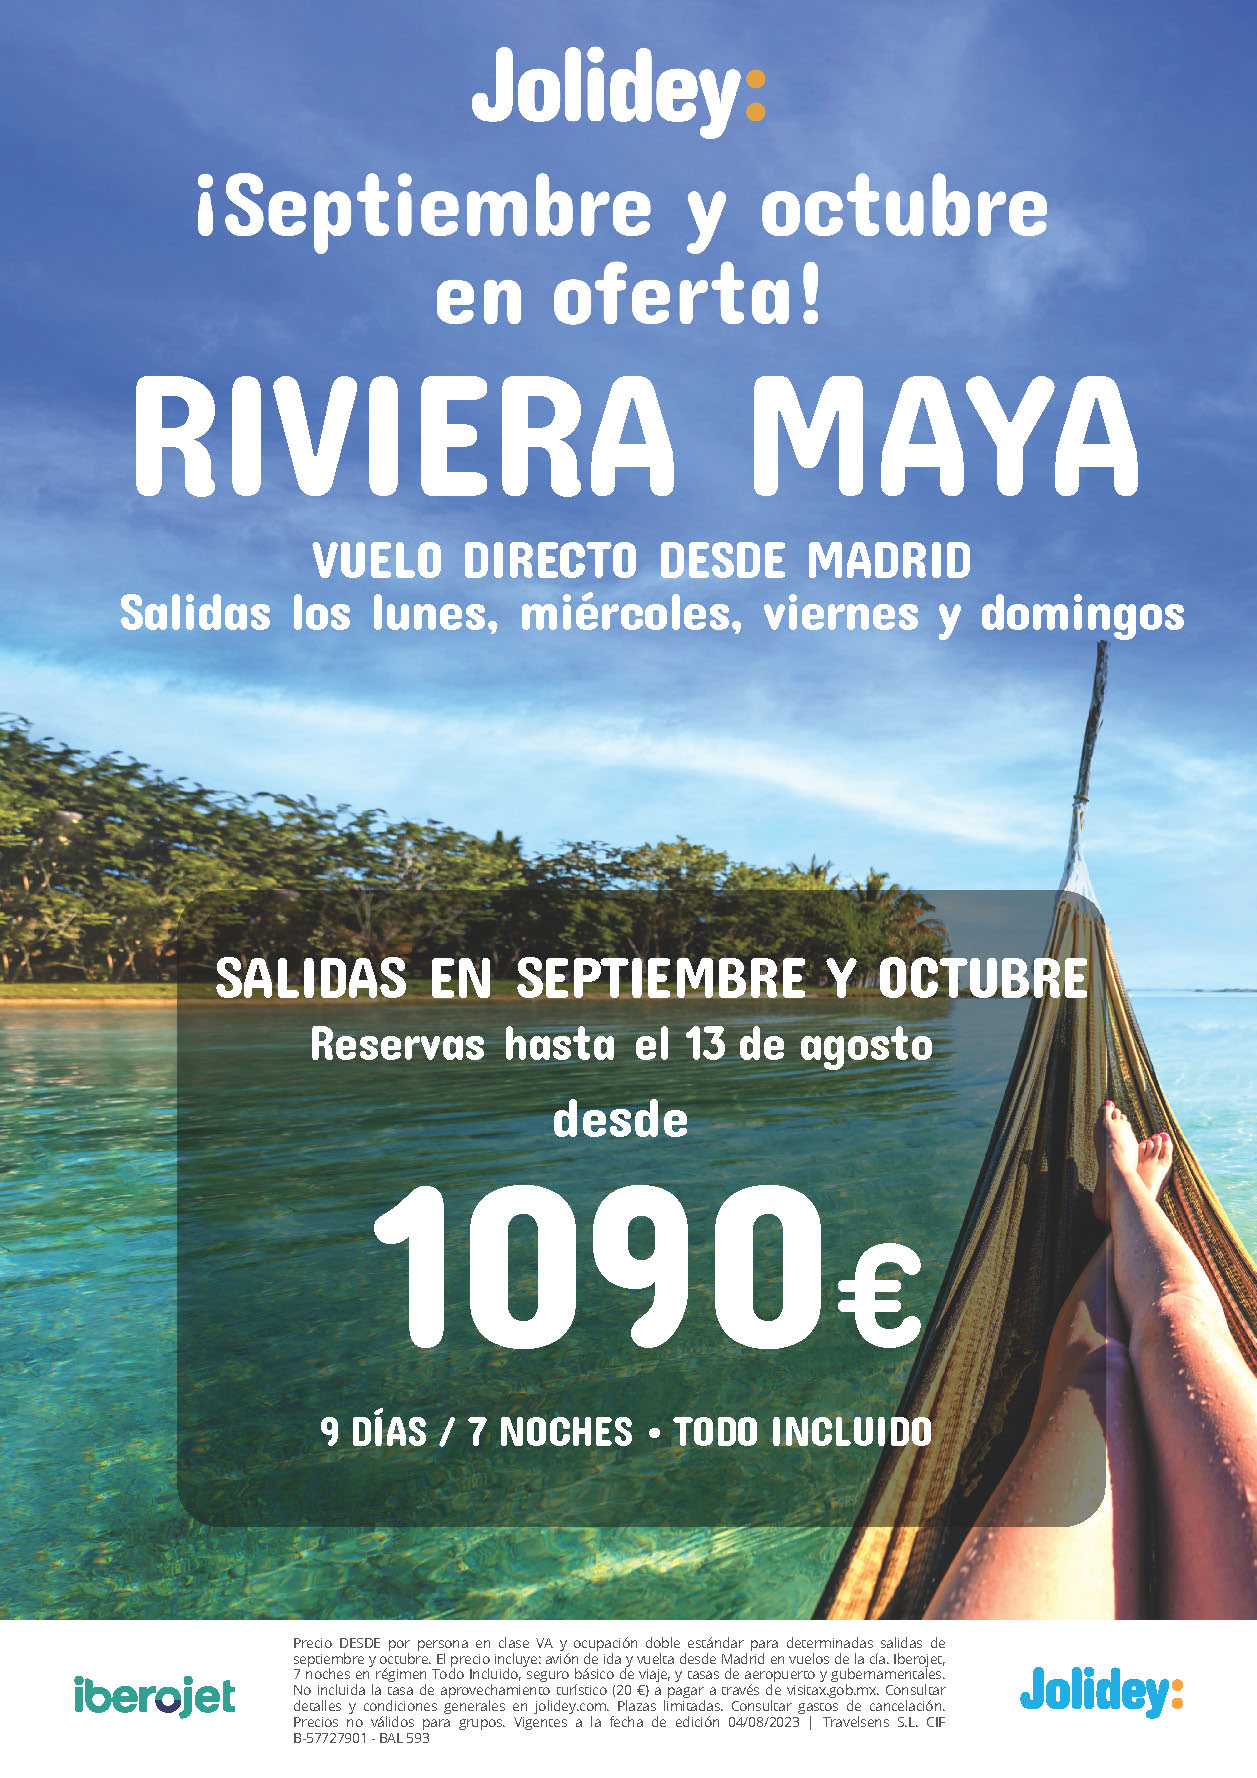 Oferta Jolidey Septiembre Octubre 2023 Estancia en Riviera Maya Mexico 9 dias Todo Incluido salidas en vuelo directo desde Madrid